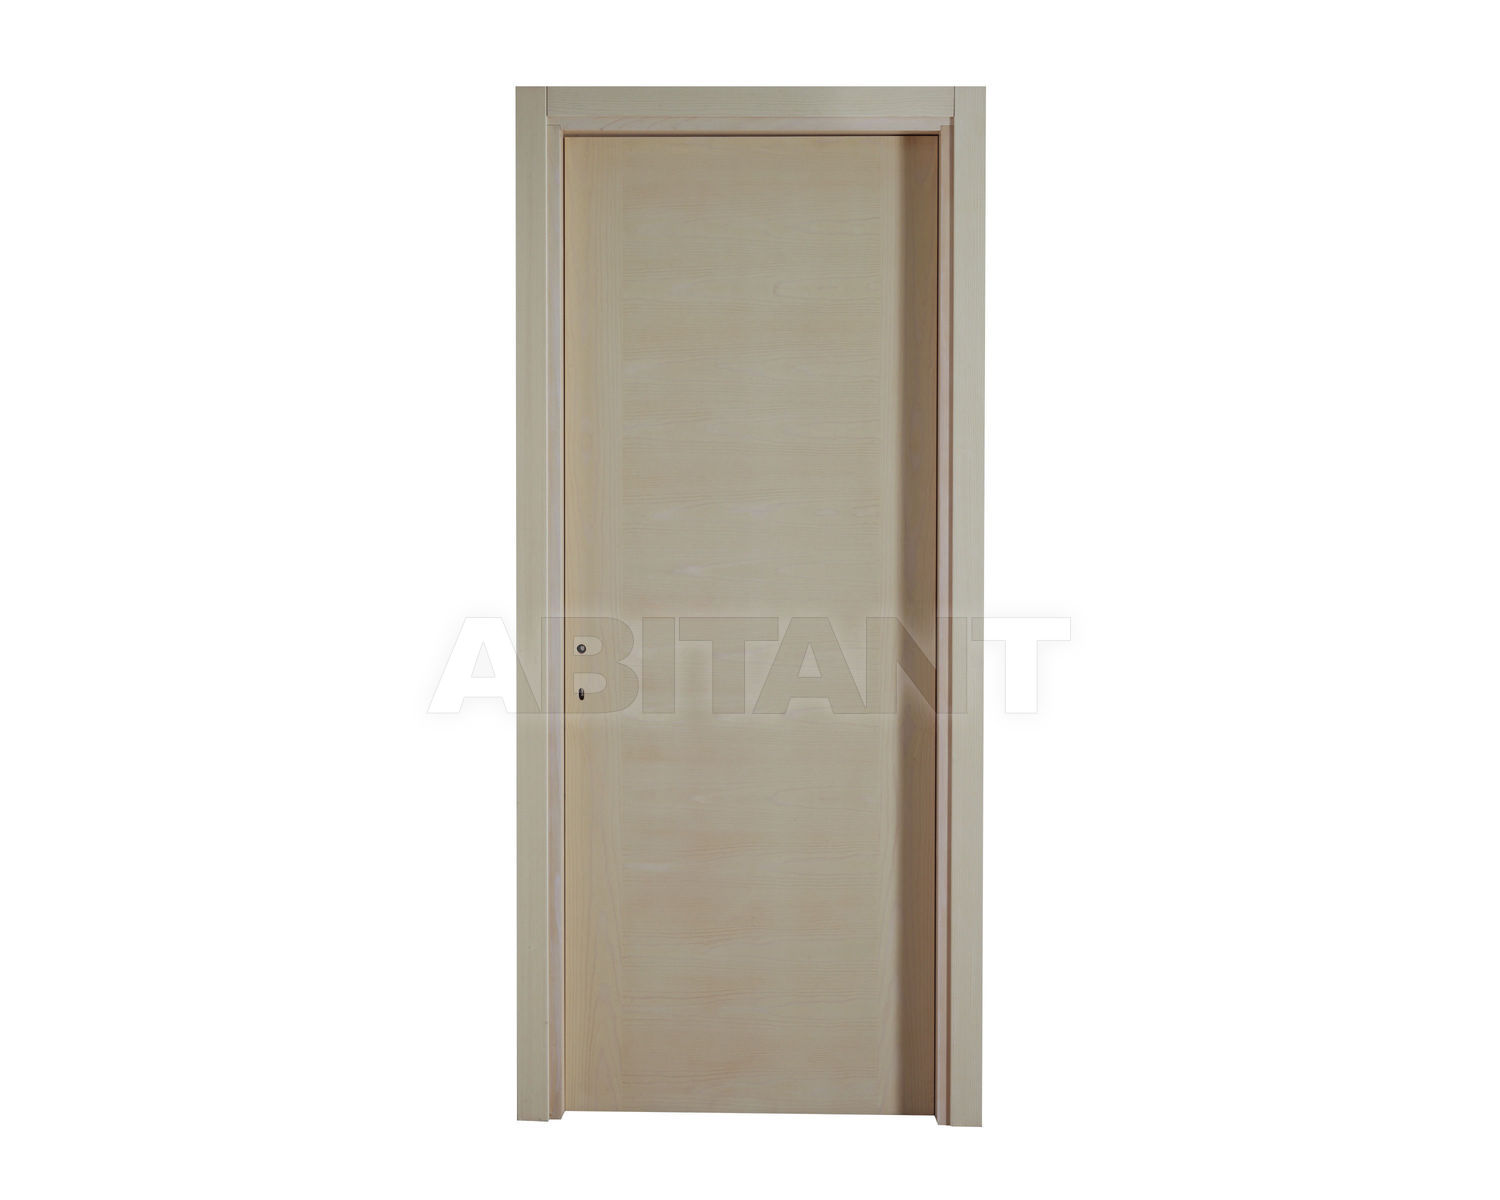 Купить Дверь деревянная Geronazzo F.lli snc Porte 50 FT Abete